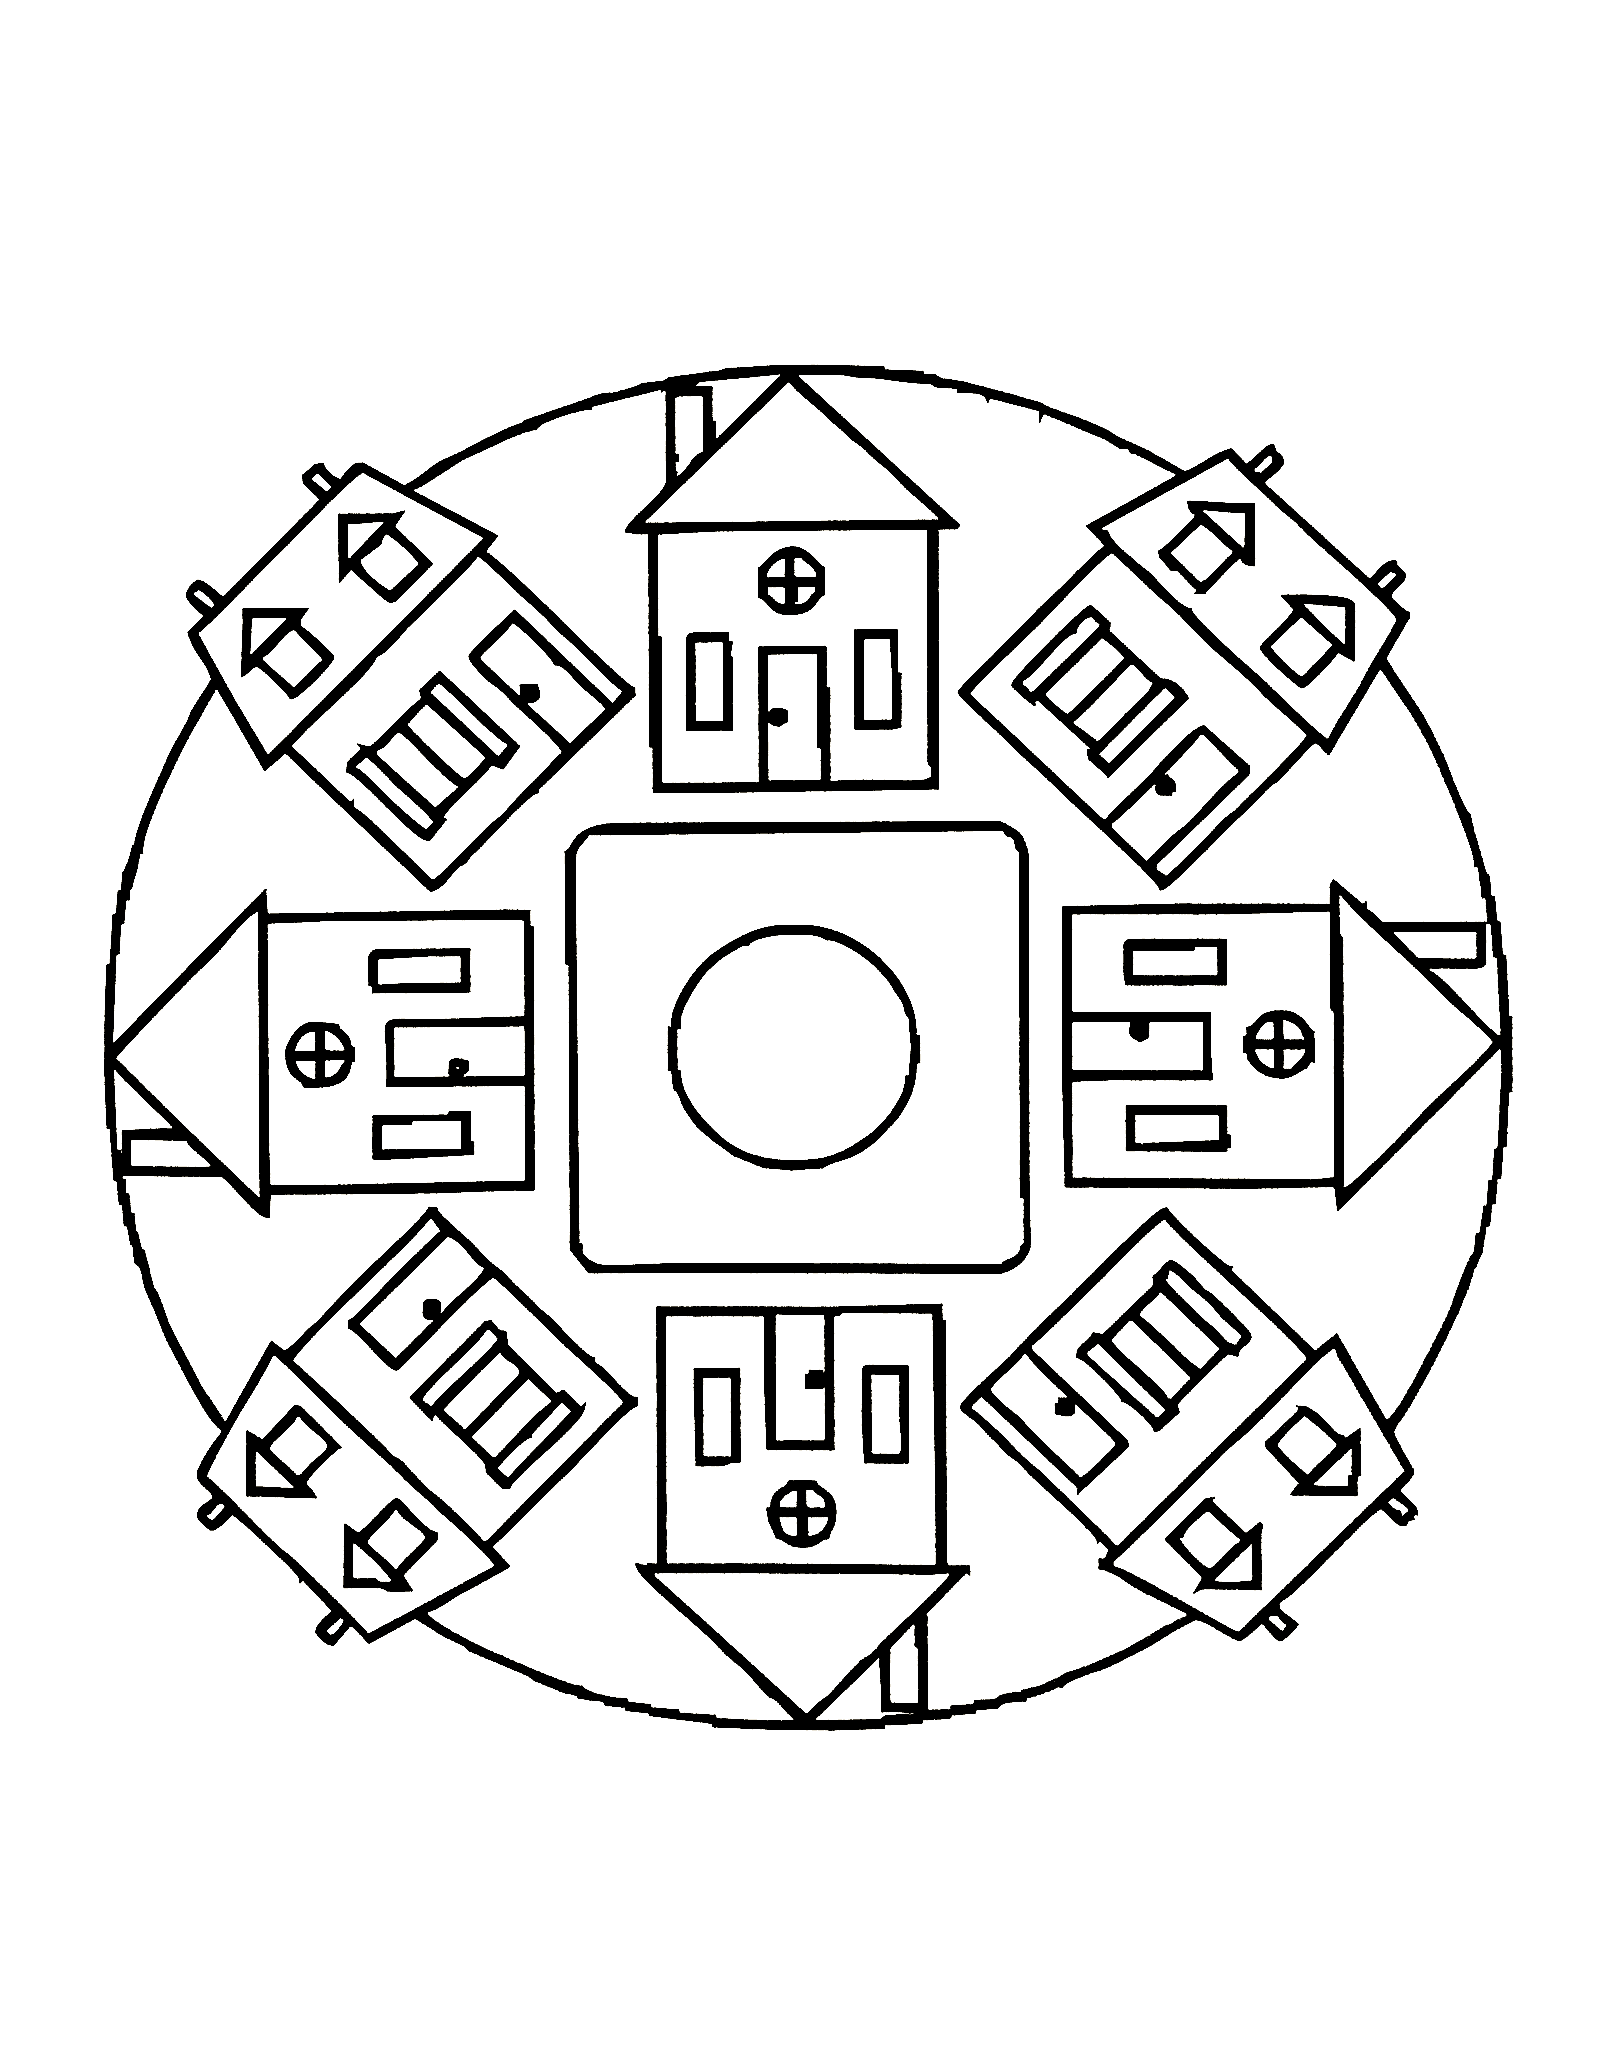 Très joli mandala symétrique où figure deux types de maisons. Assez simple à colorier.